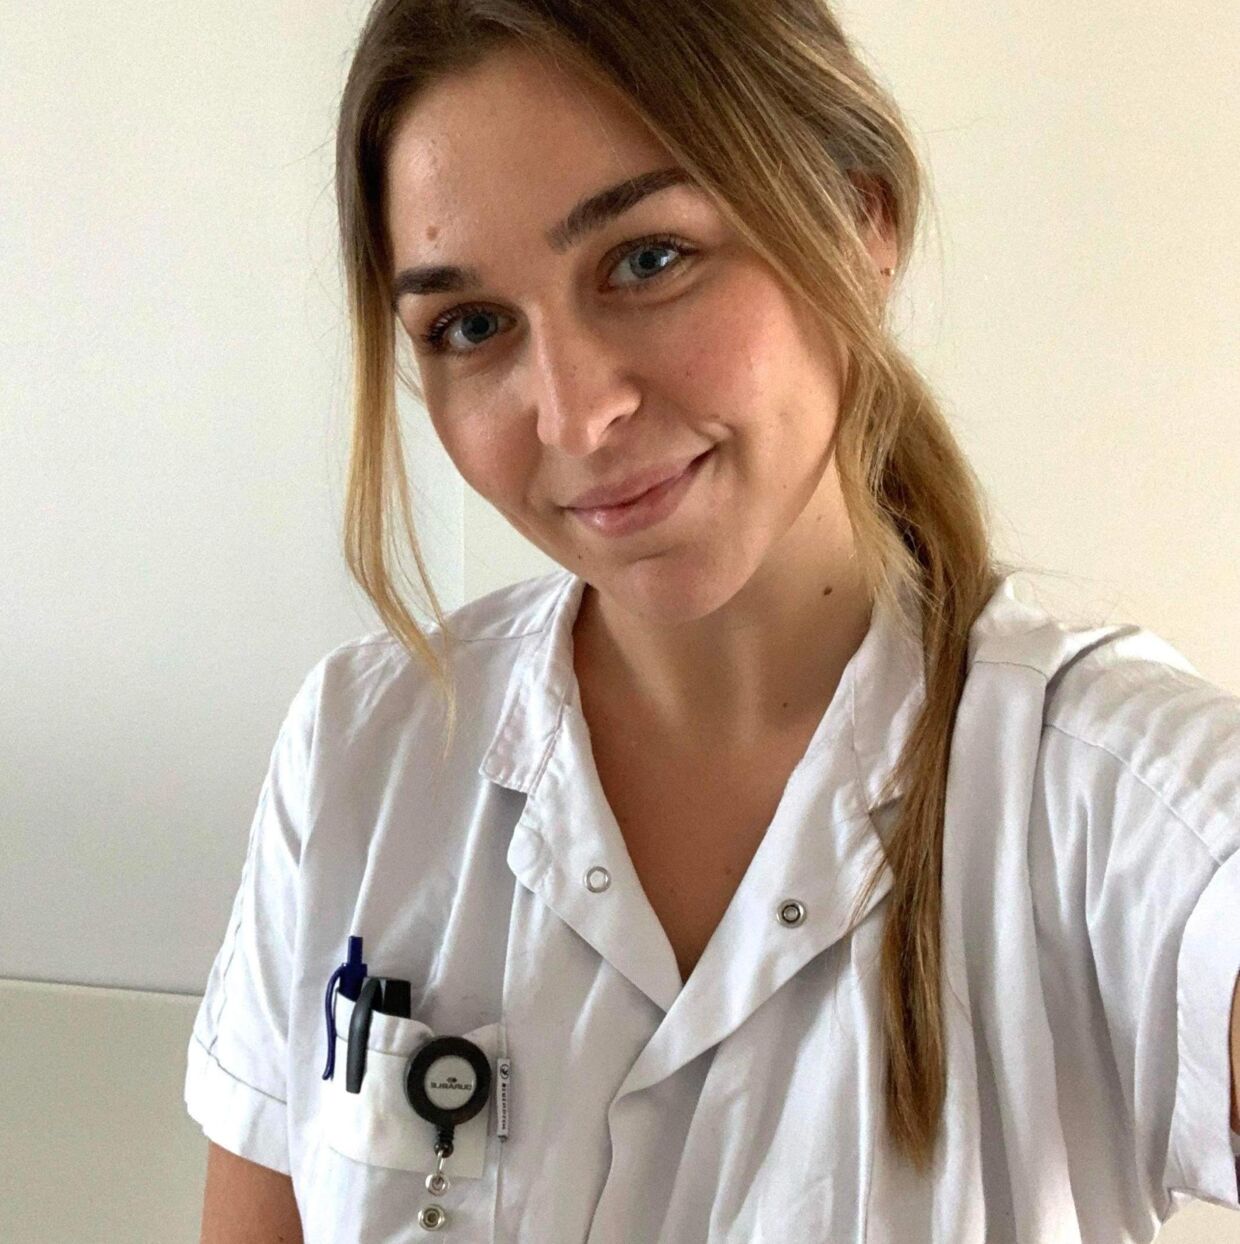 Maja Pérez håber, at landets sygeplejersker møder en større anerkendelse for det arbejde – og ansvar – de sidder med hver dag.